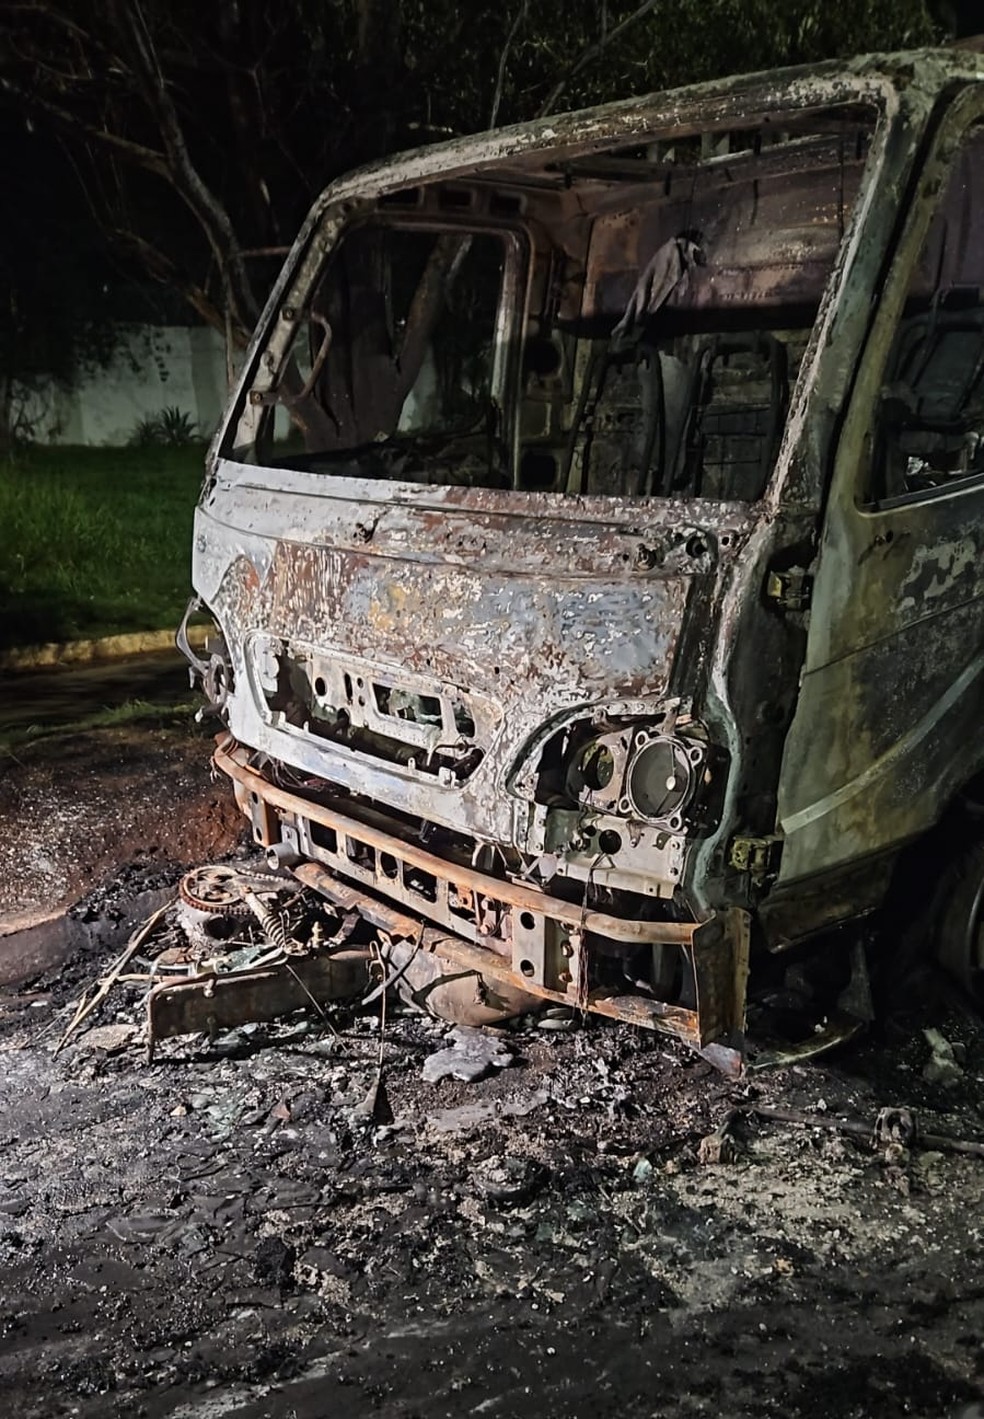 A equipe de CBM combateu as chamas até a extinção do incêndio, o caminhão teve danos na cabine — Foto: Reprodução